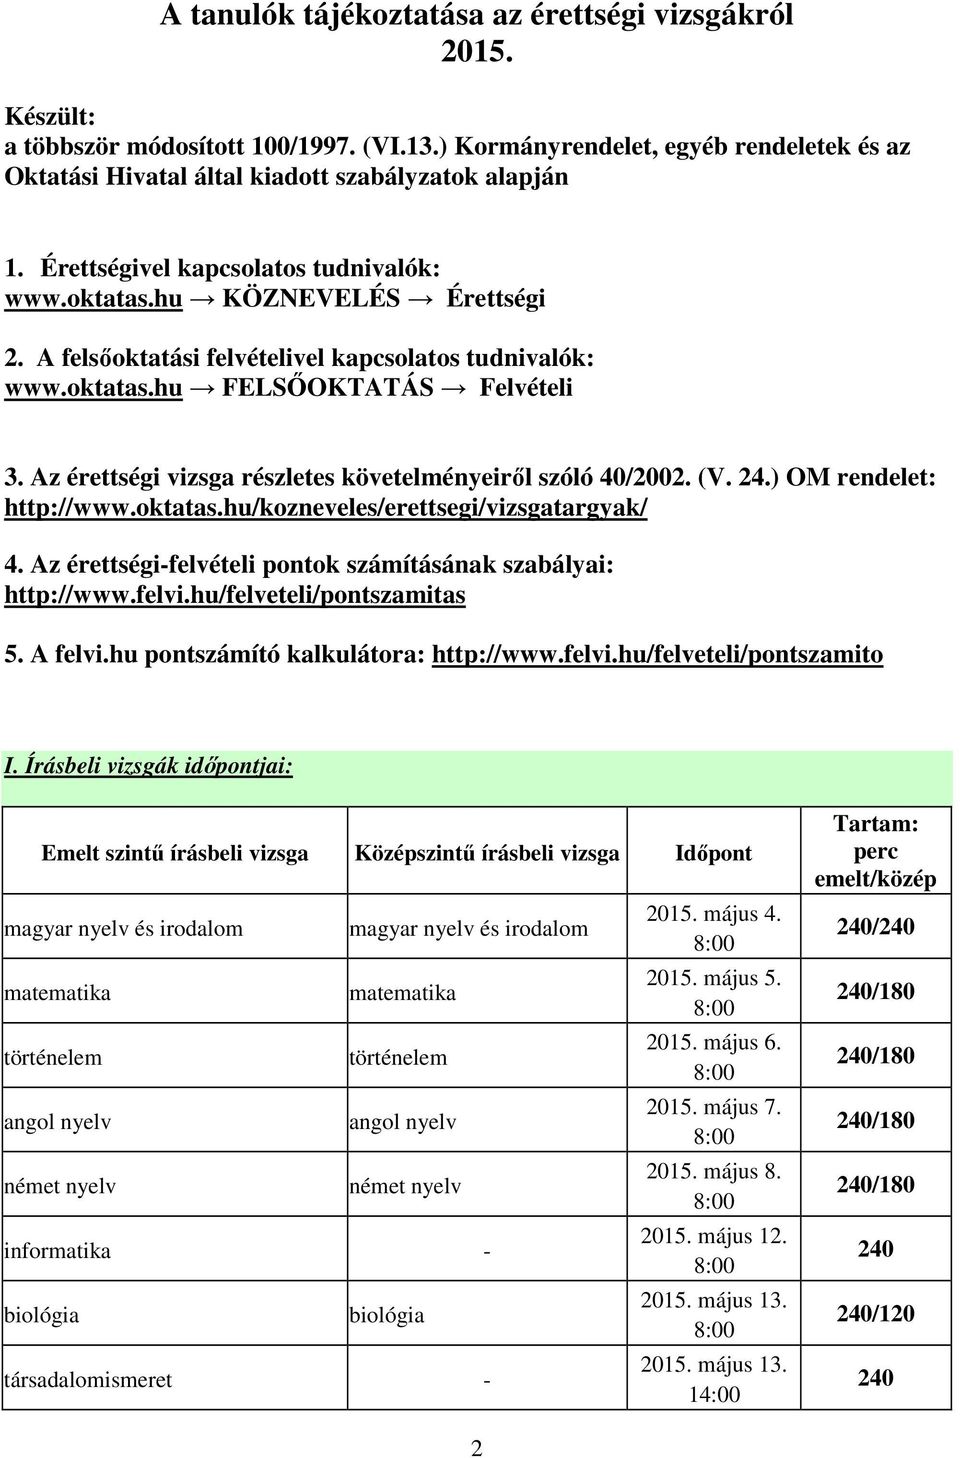 Az érettségi vizsga részletes követelményeiről szóló 40/2002. (V. 24.) OM rendelet: http://www.oktatas.hu/kozneveles/erettsegi/vizsgatargyak/ 4.